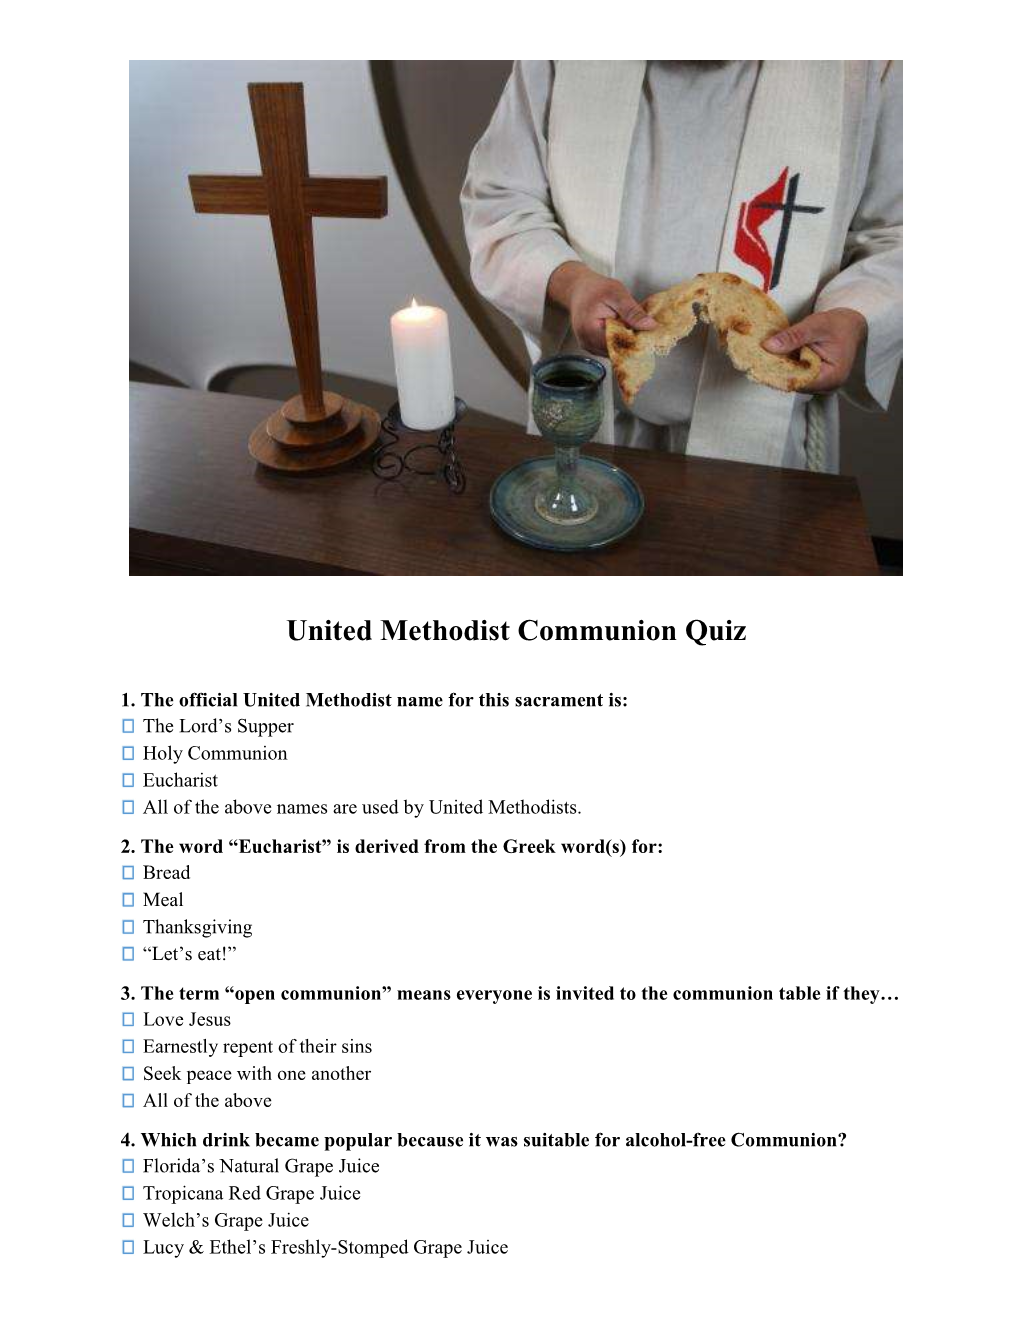 United Methodist Communion Quiz